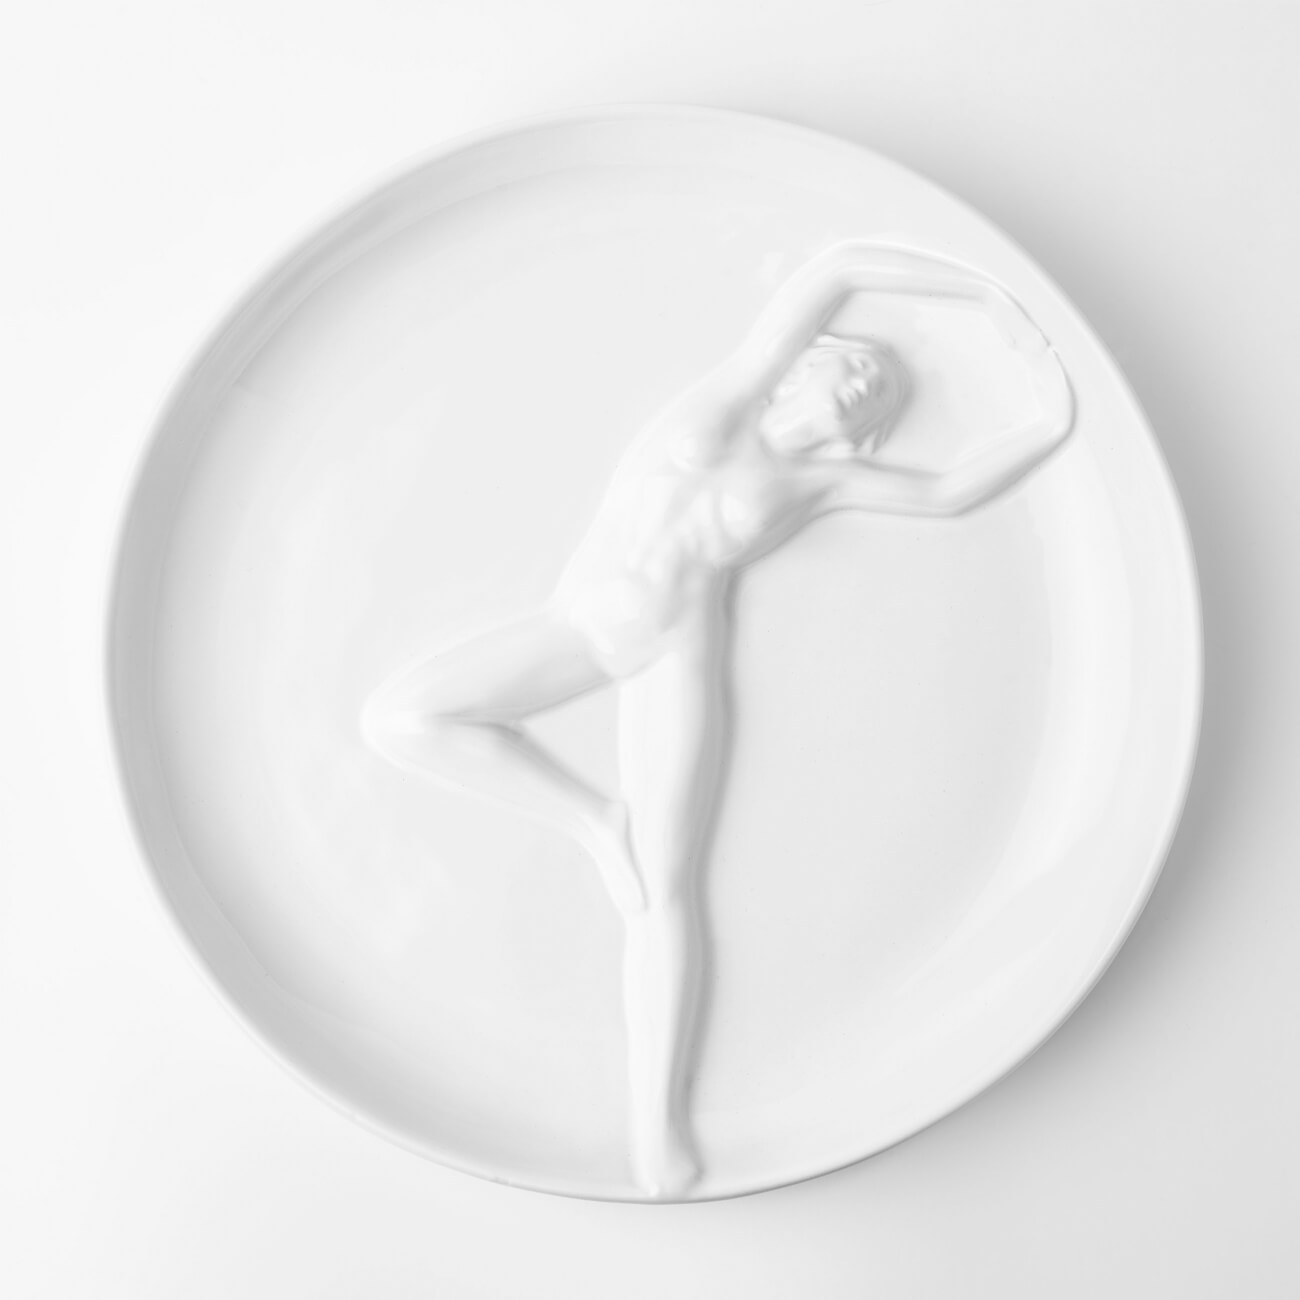 Блюдо, 24 см, керамика, белое, Женщина, Face блюдо 24 см керамика белое женщина face